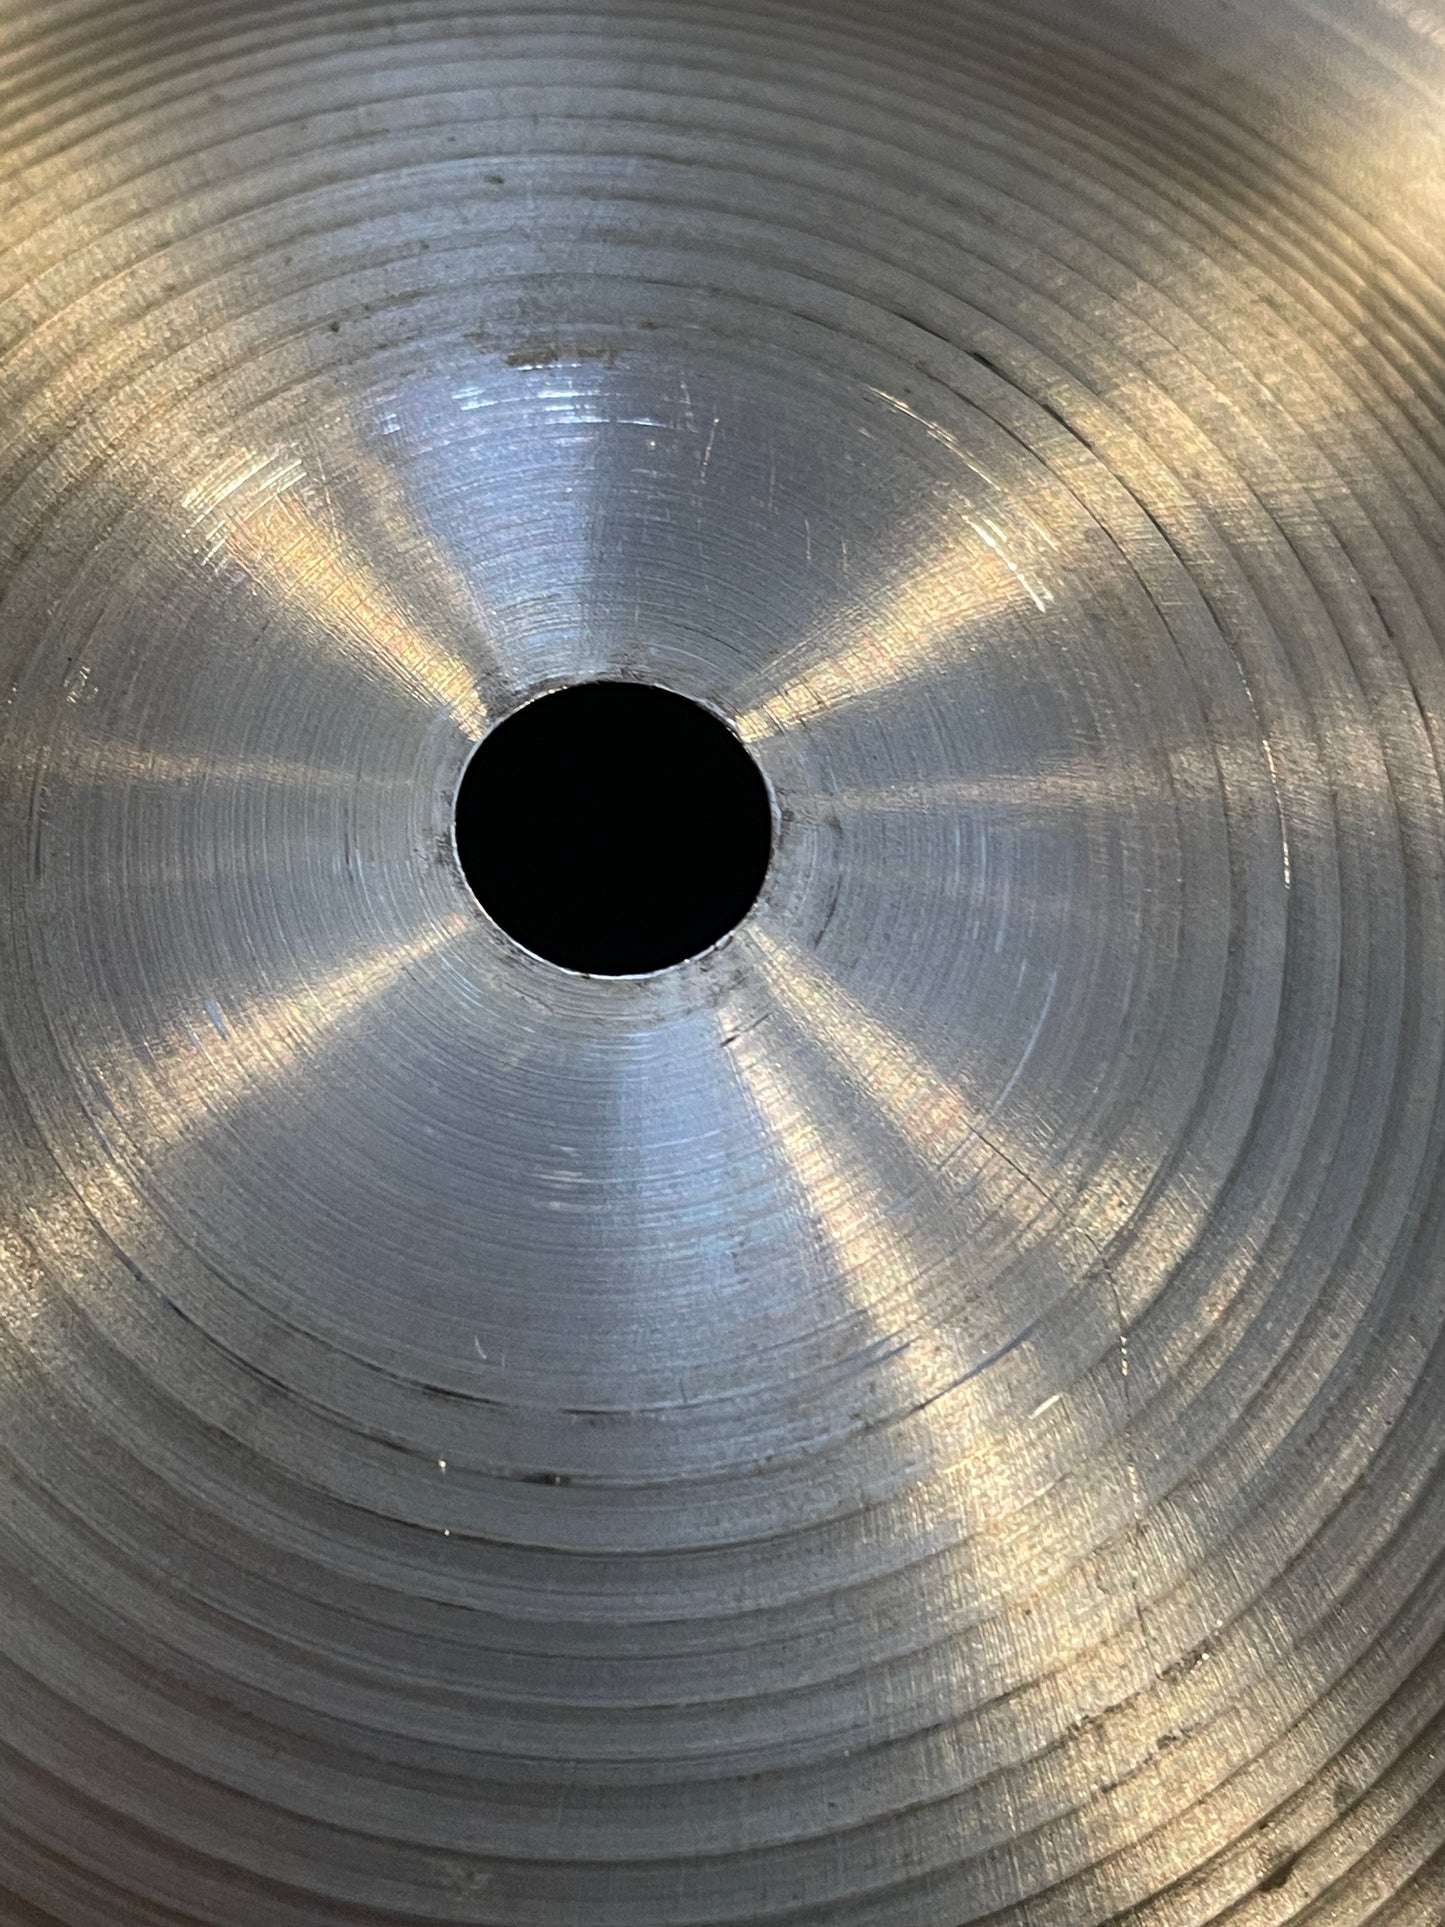 18" Zildjian A Thin Crash Cymbal 1424g